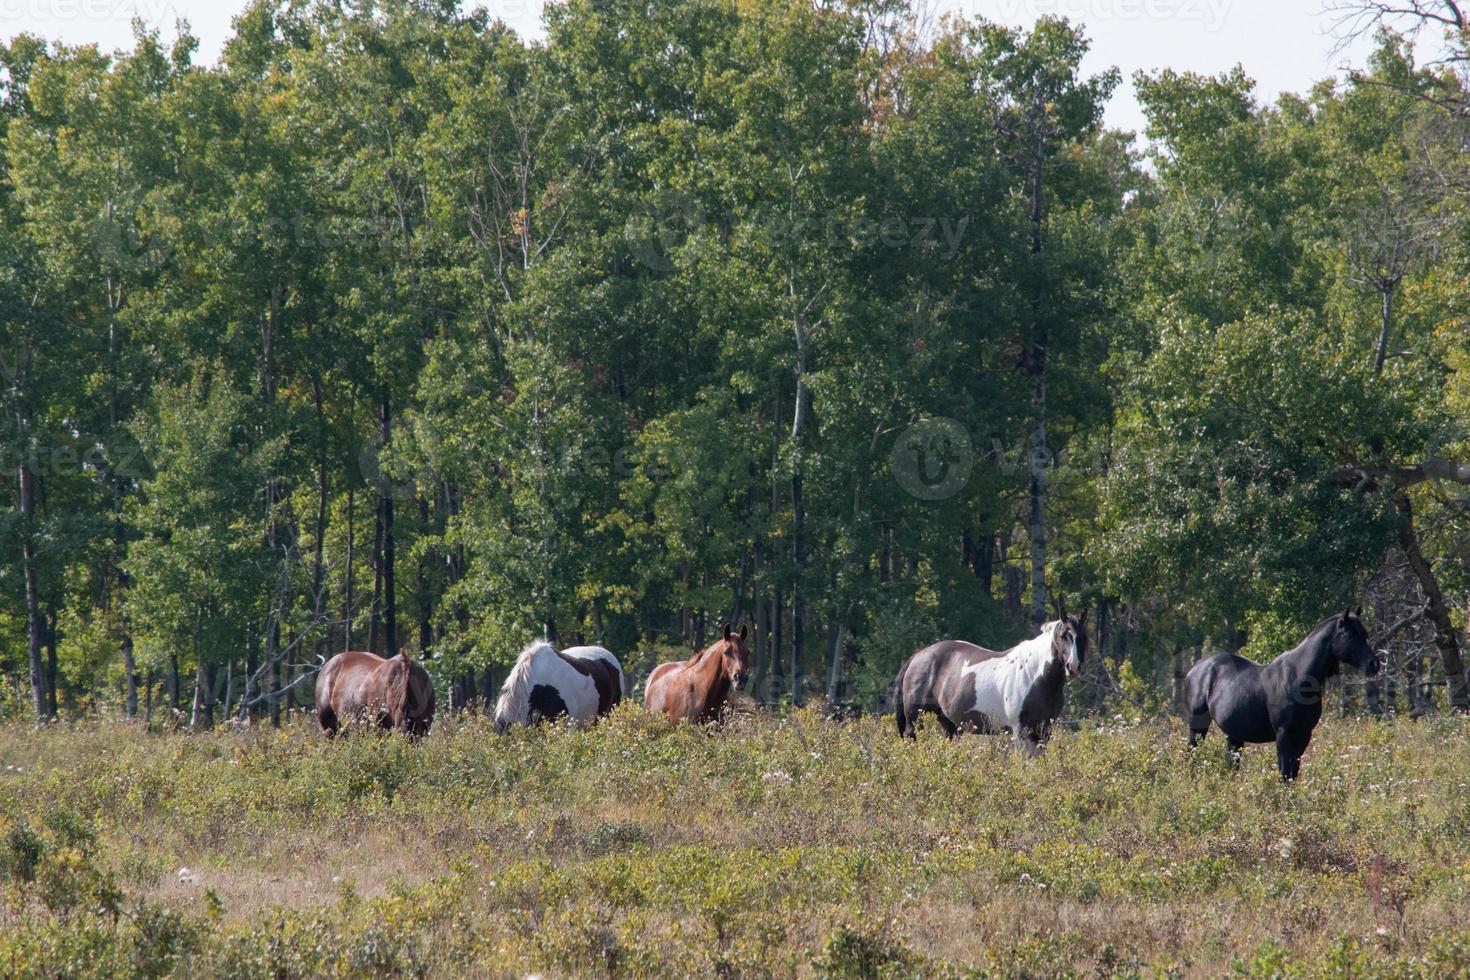 paarden naar de wei op het platteland van Saskatchewan, Canada foto